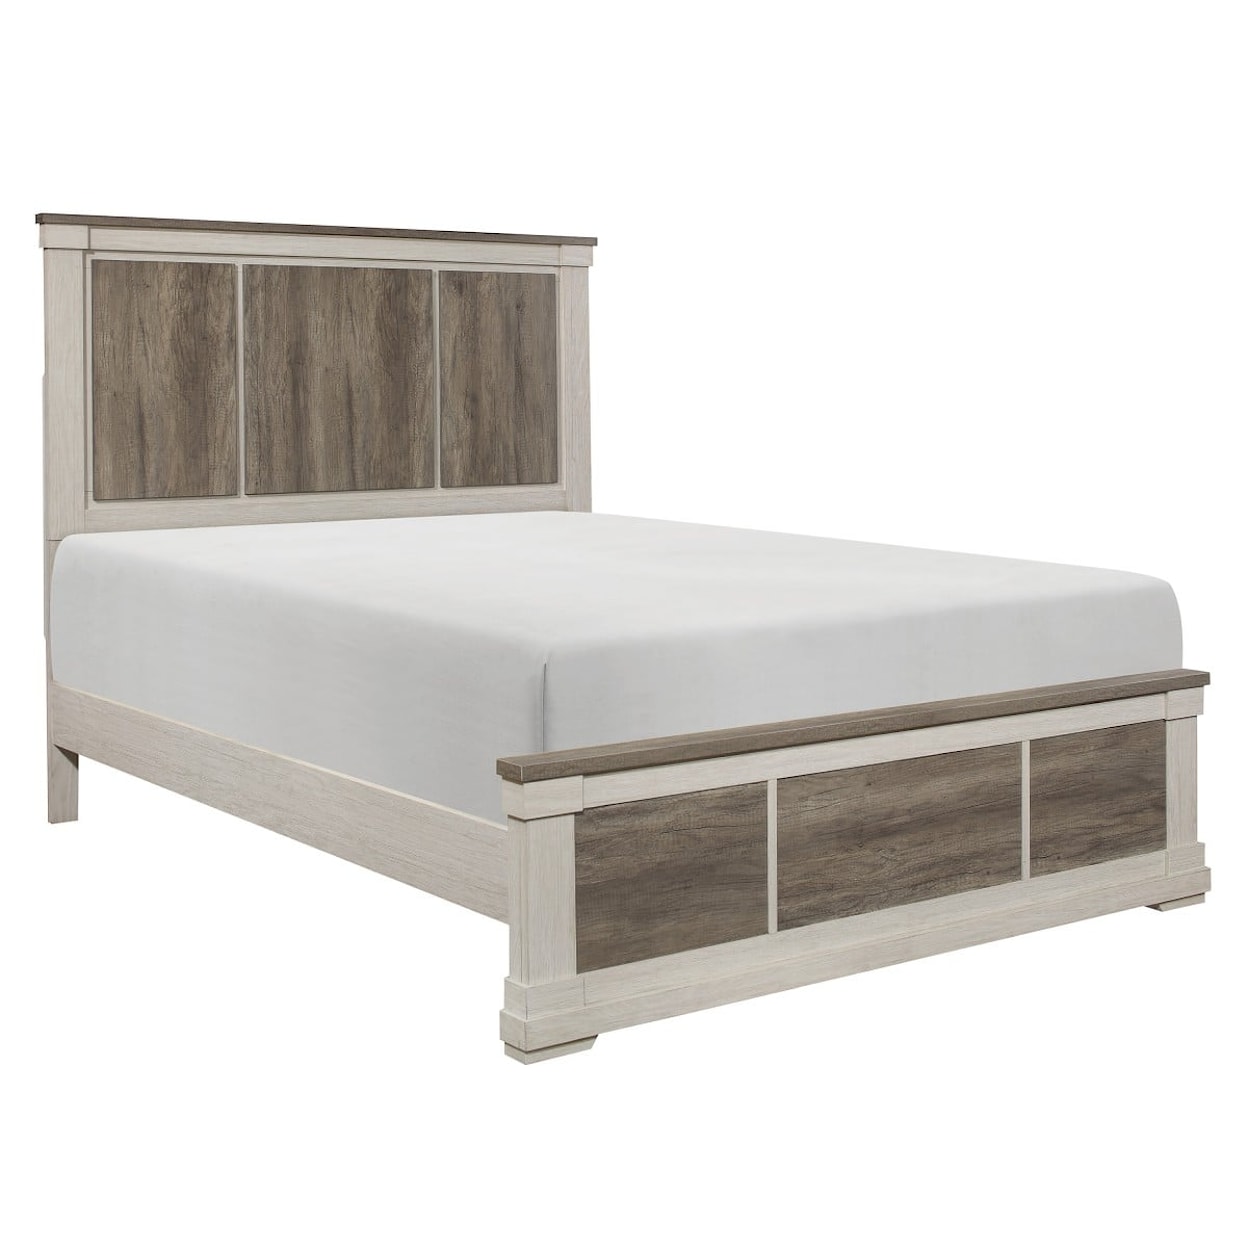 Homelegance Arcadia Full Bed